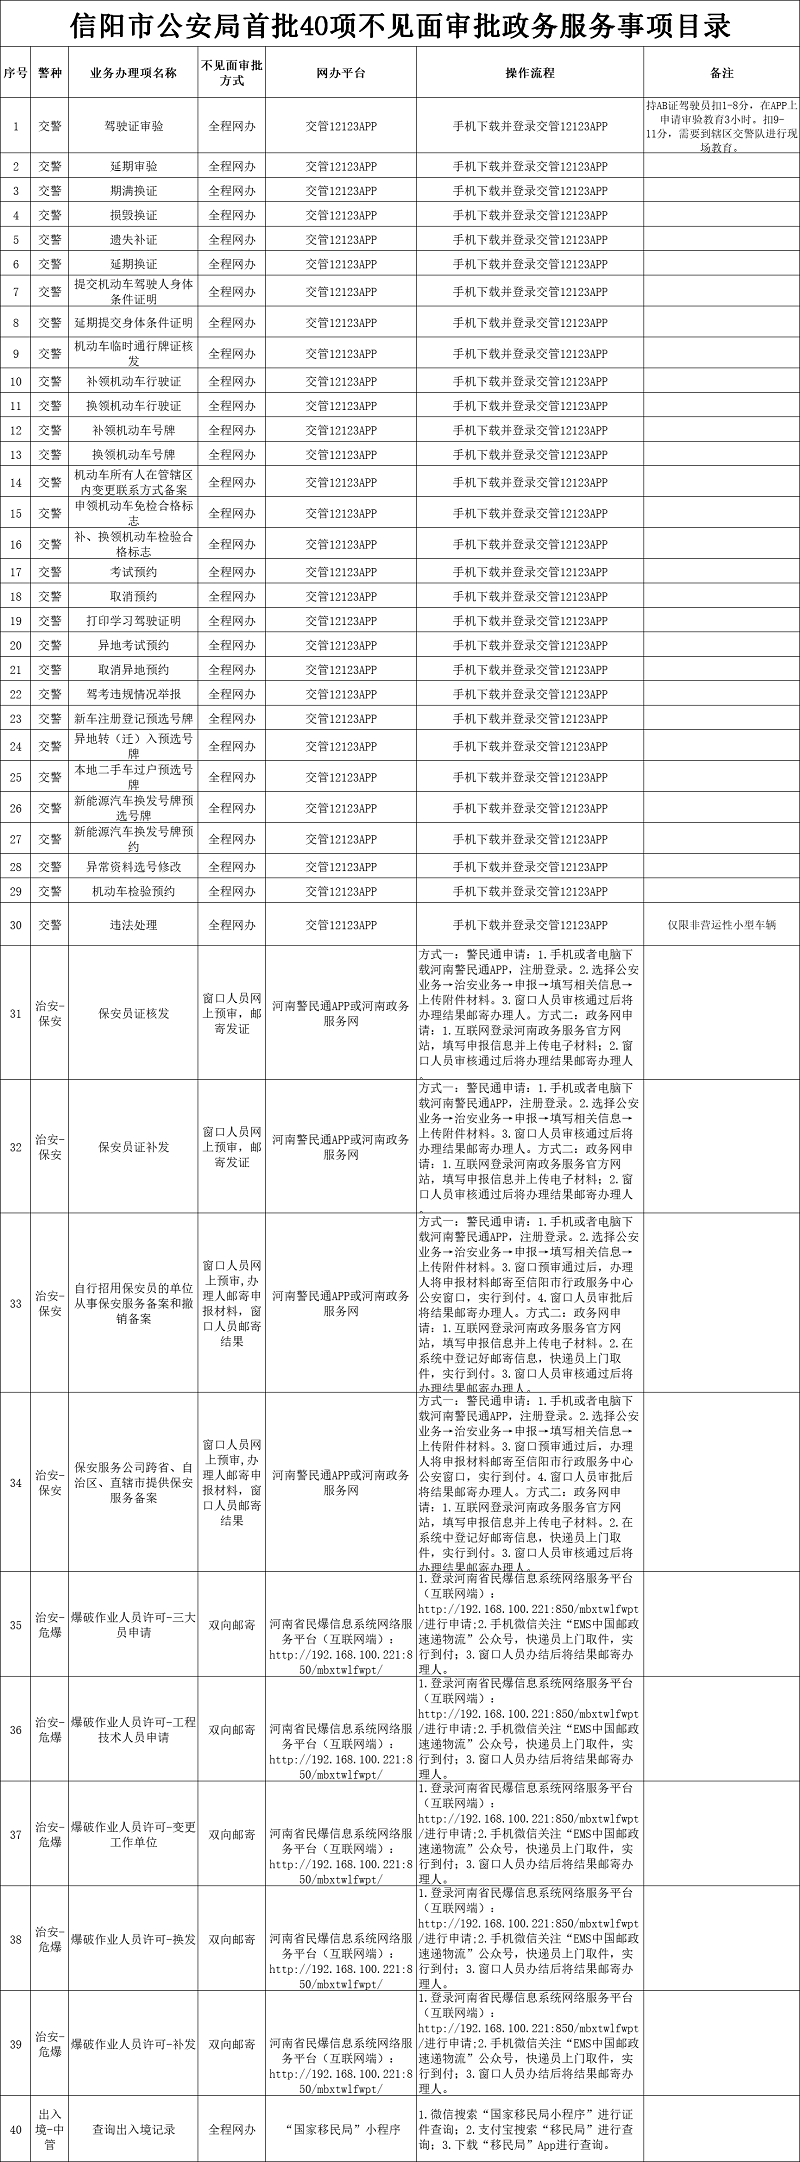 【已征集】信阳市公安局关于对首批40项公安政务服务事项实行“不见面审批”的公告